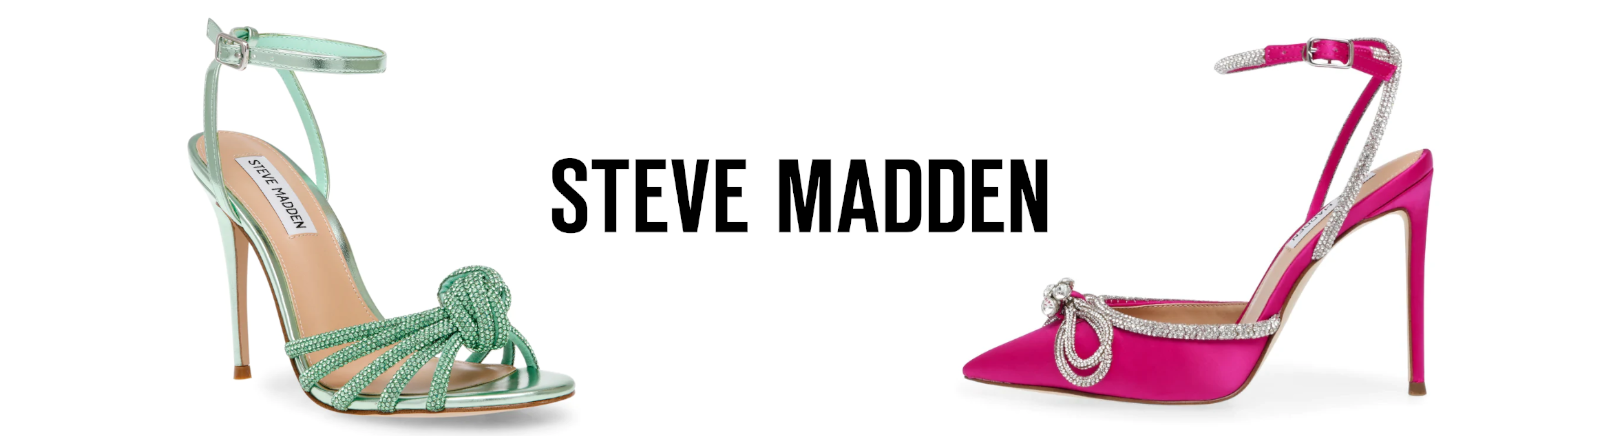 Juppen: Steve Madden Coole Biker Boots für Damen online shoppen